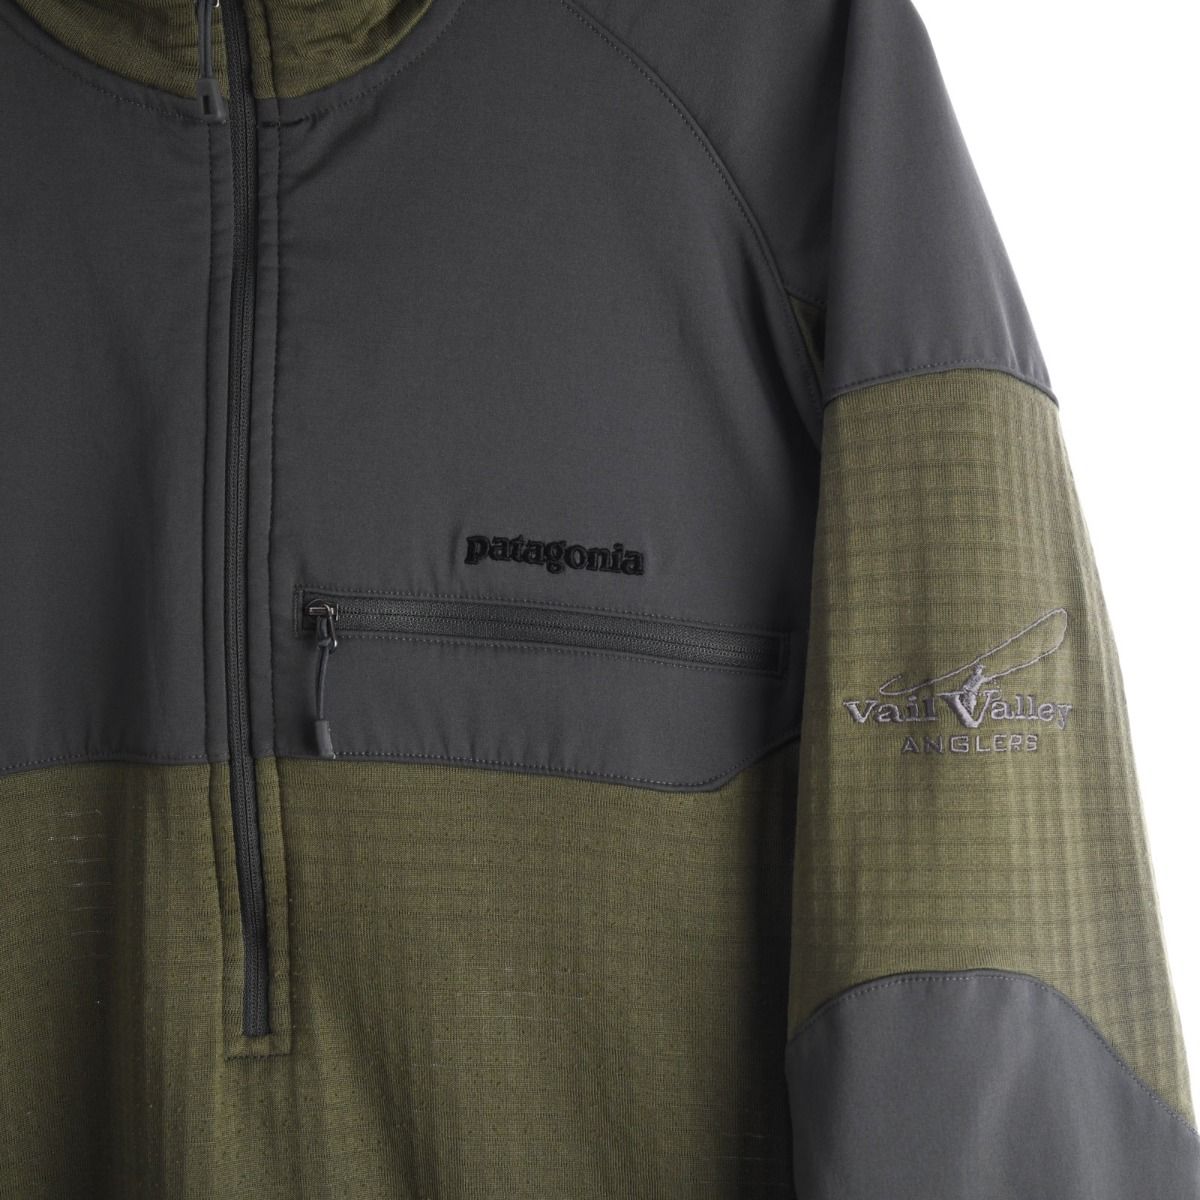 Patagonia 2015 R1 Field Shirt